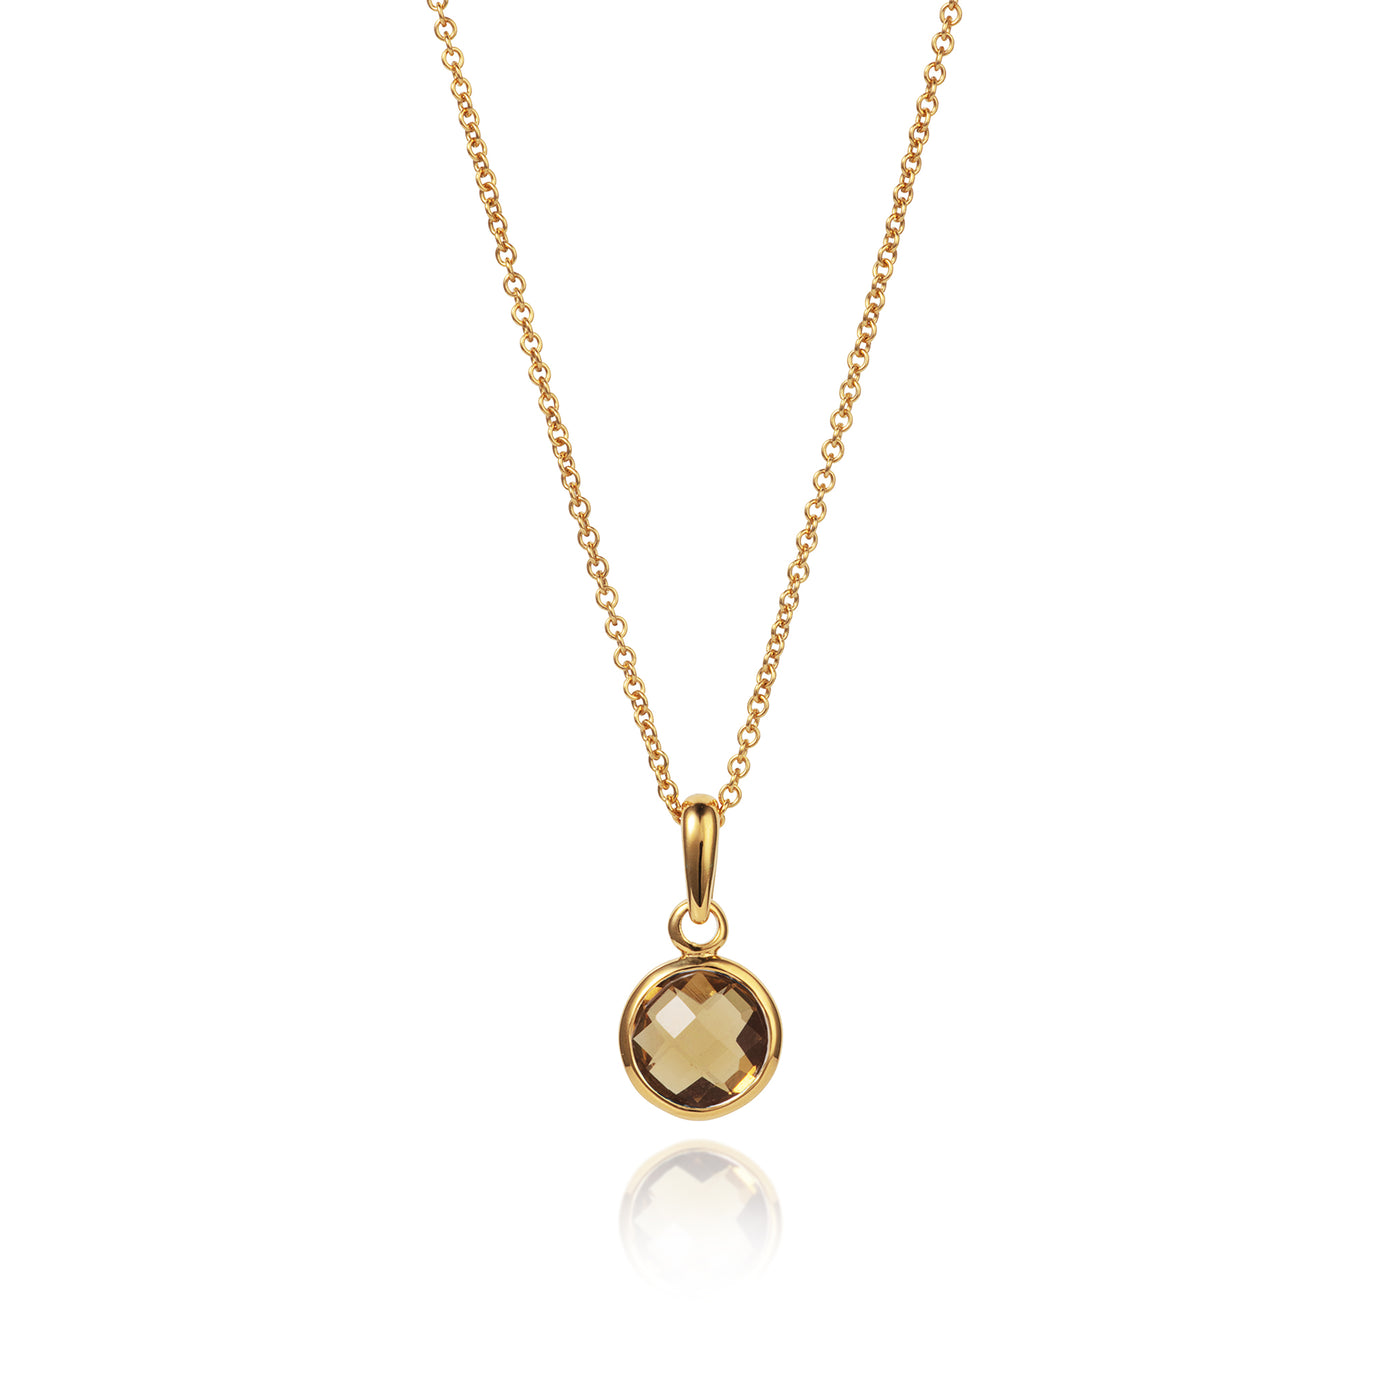 Birthstone Necklace in 18ct Gold Vermeil